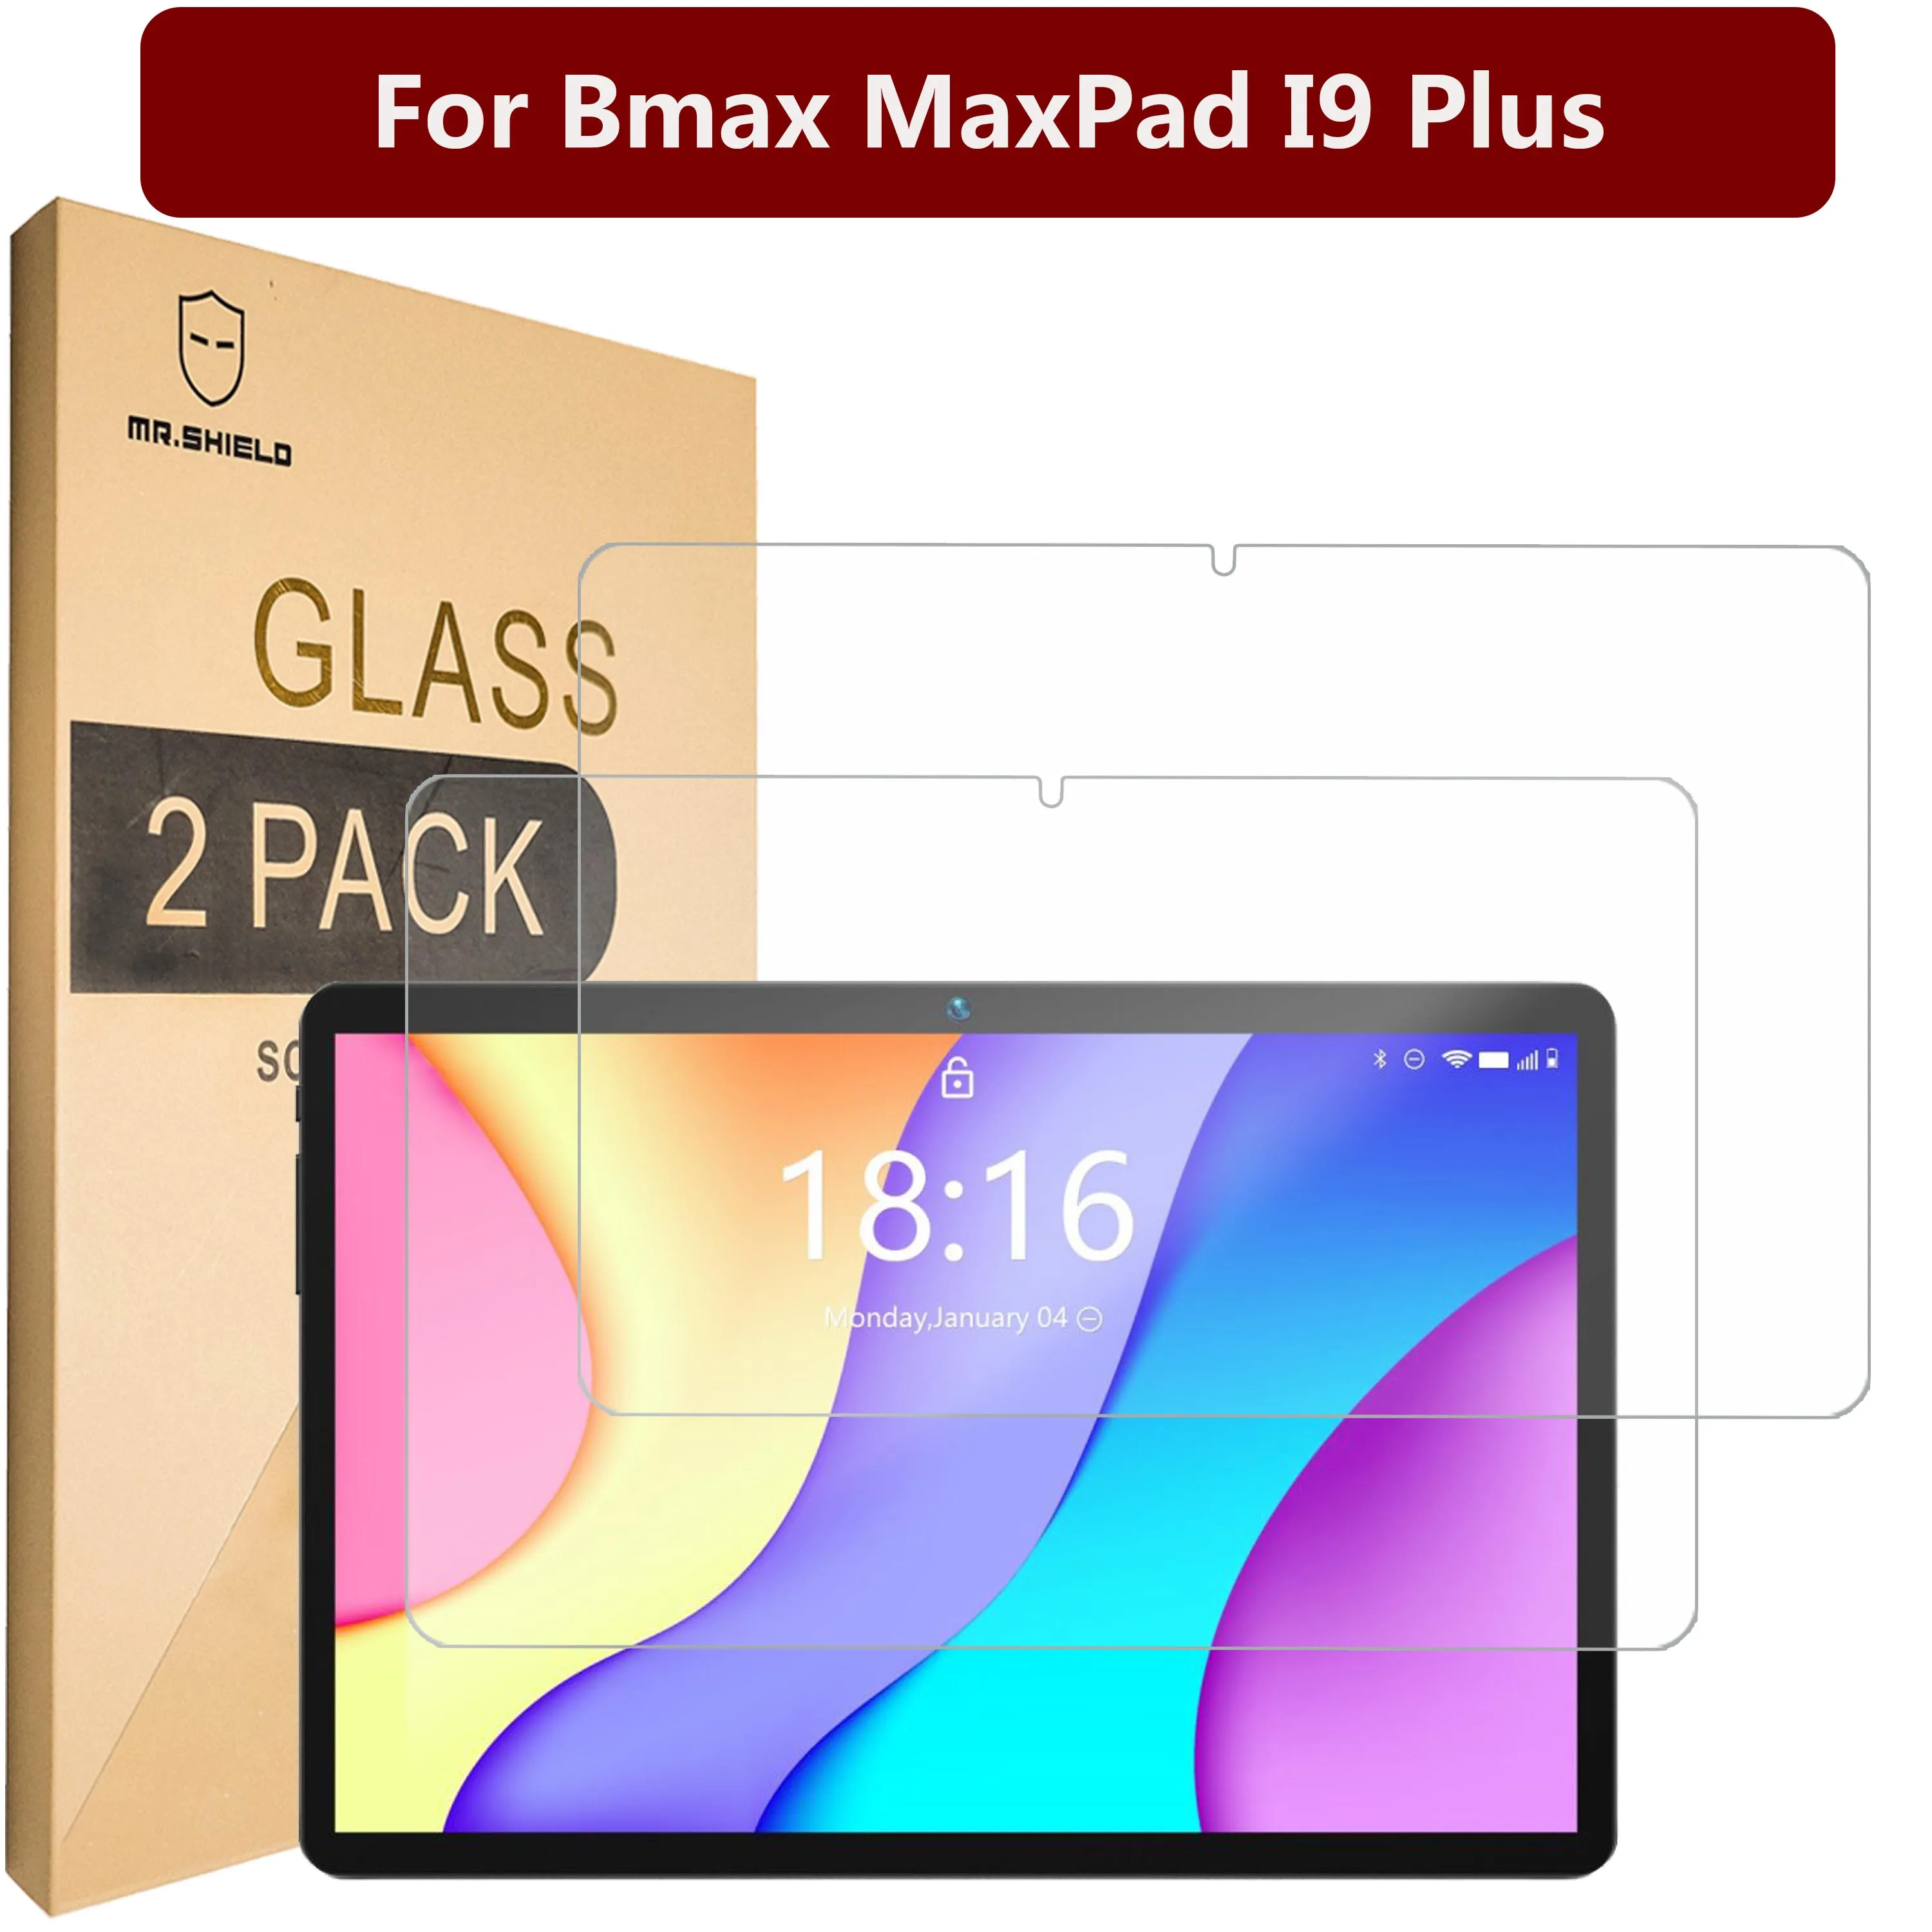 Защитная пленка Mr.Shield [в 2 упаковках] для экрана Bmax MaxPad I9 Plus [закаленное стекло] [Японское стекло с твердостью 9H] Защитная пленка для экрана защитная пленка mr shield [в 3 упаковках] для экрана honor x7 [закаленное стекло] [японское стекло с твердостью 9h] защитная пленка для экрана